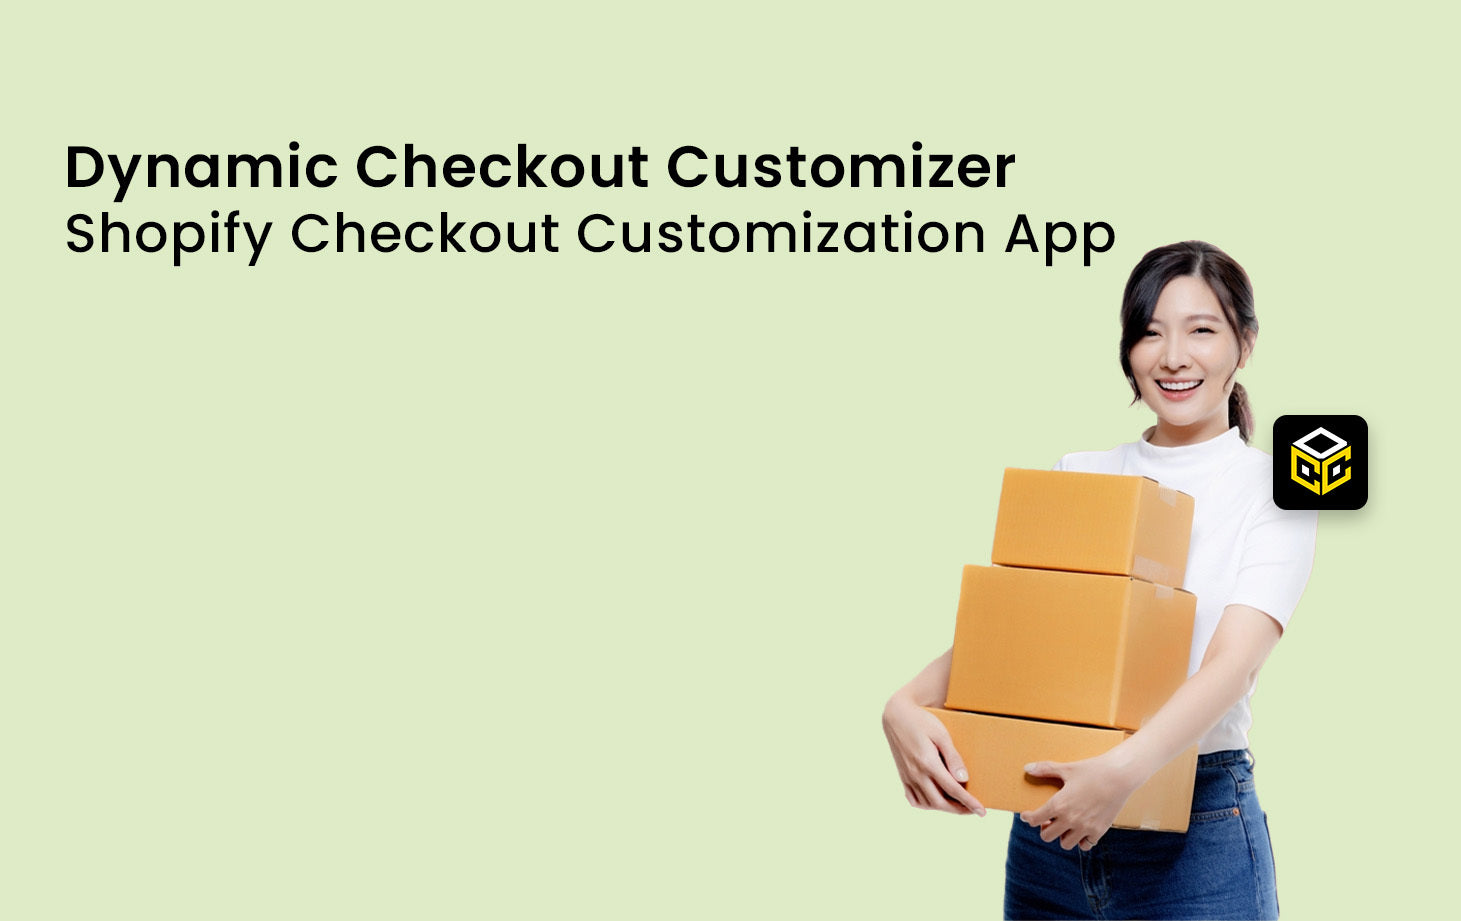 Dynamic Checkout Customizer - New Shopify Checkout Customization App